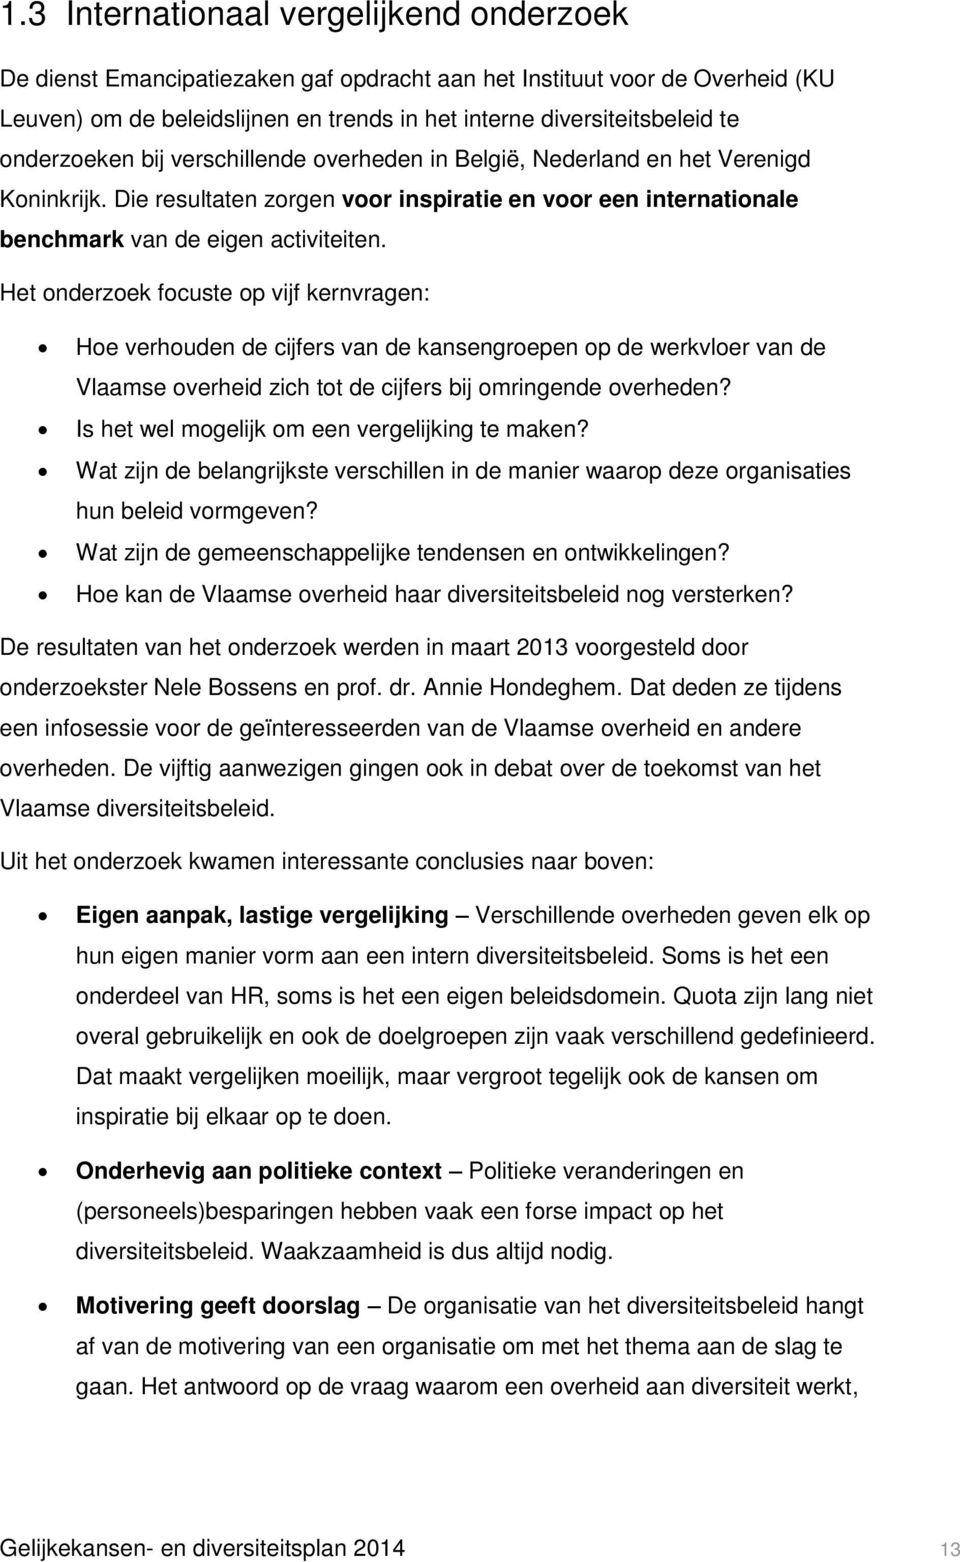 Het onderzoek focuste op vijf kernvragen: Hoe verhouden de cijfers van de kansengroepen op de werkvloer van de Vlaamse overheid zich tot de cijfers bij omringende overheden?